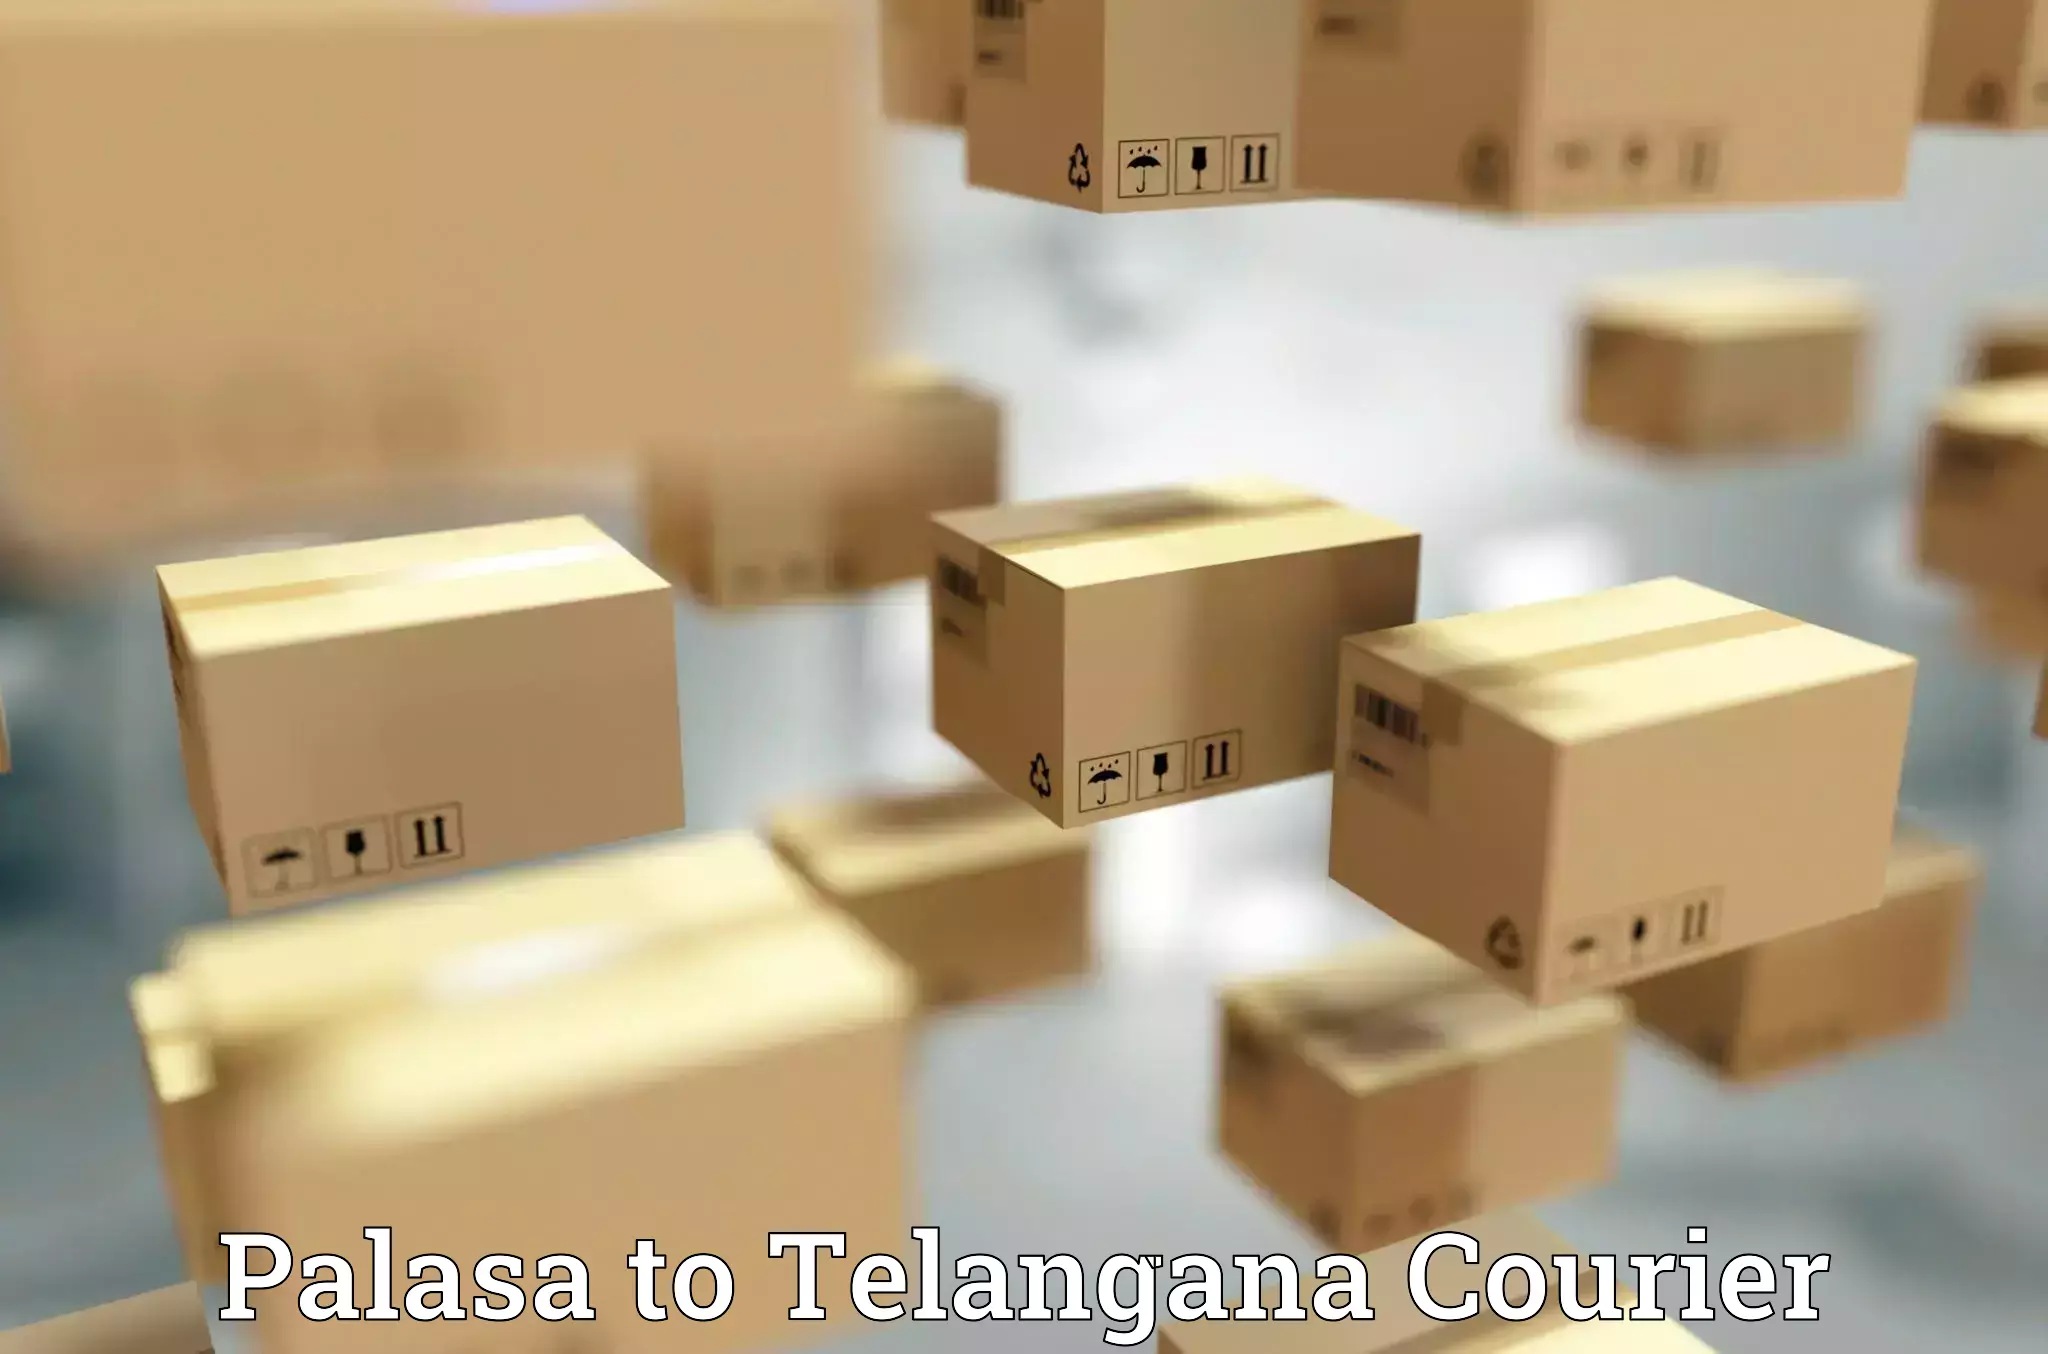 Efficient freight service Palasa to Telangana